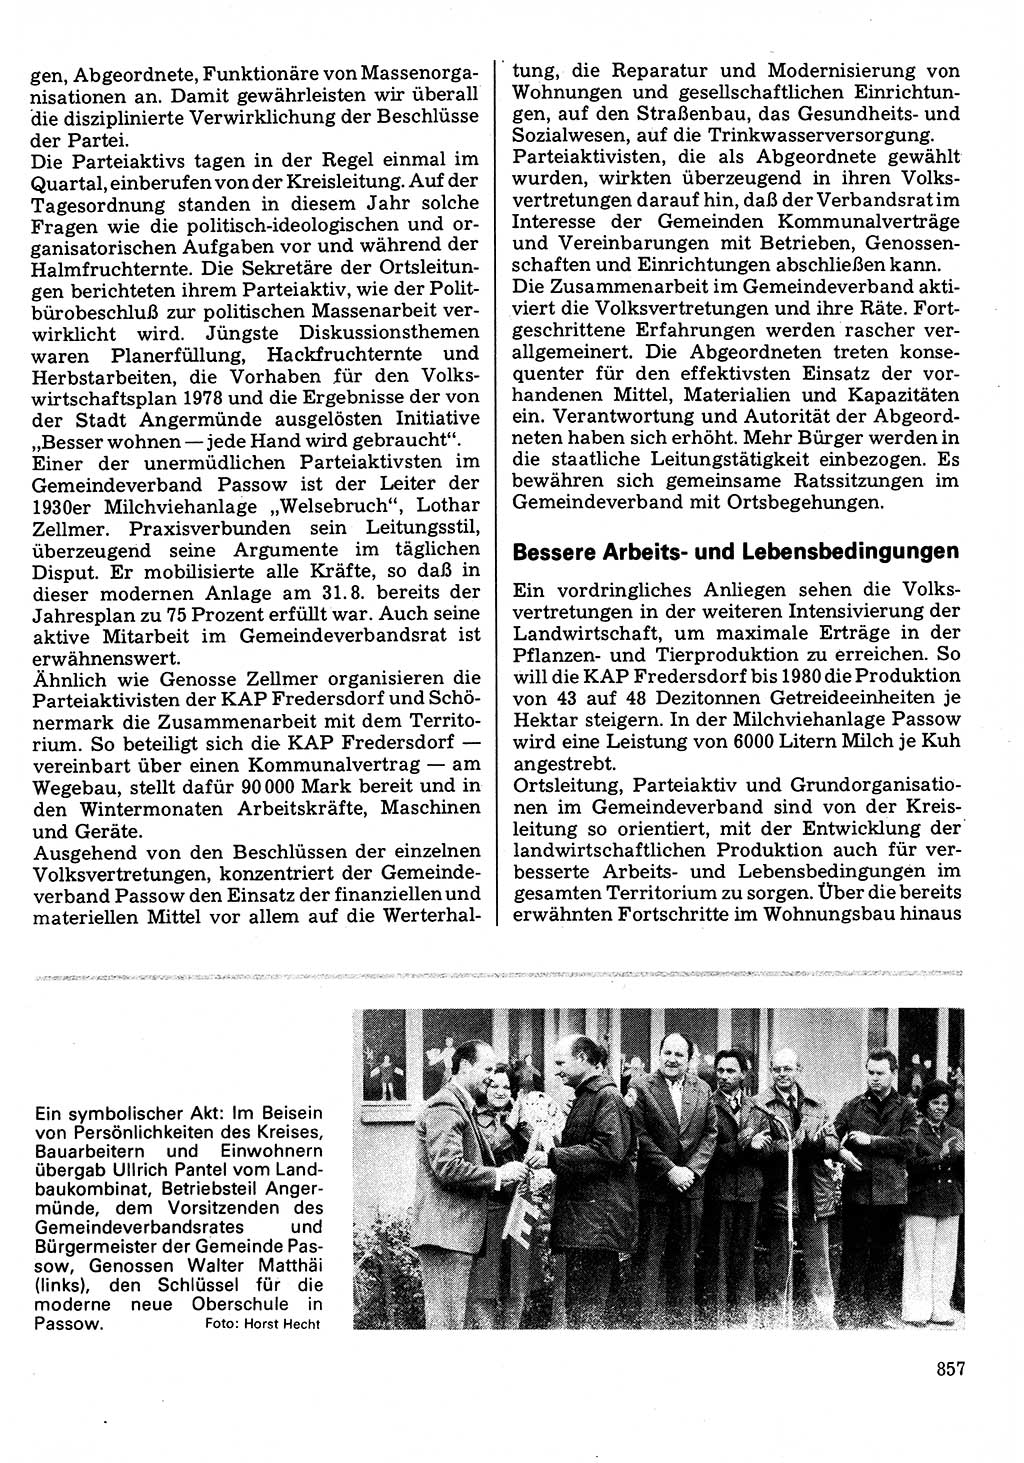 Neuer Weg (NW), Organ des Zentralkomitees (ZK) der SED (Sozialistische Einheitspartei Deutschlands) für Fragen des Parteilebens, 32. Jahrgang [Deutsche Demokratische Republik (DDR)] 1977, Seite 857 (NW ZK SED DDR 1977, S. 857)